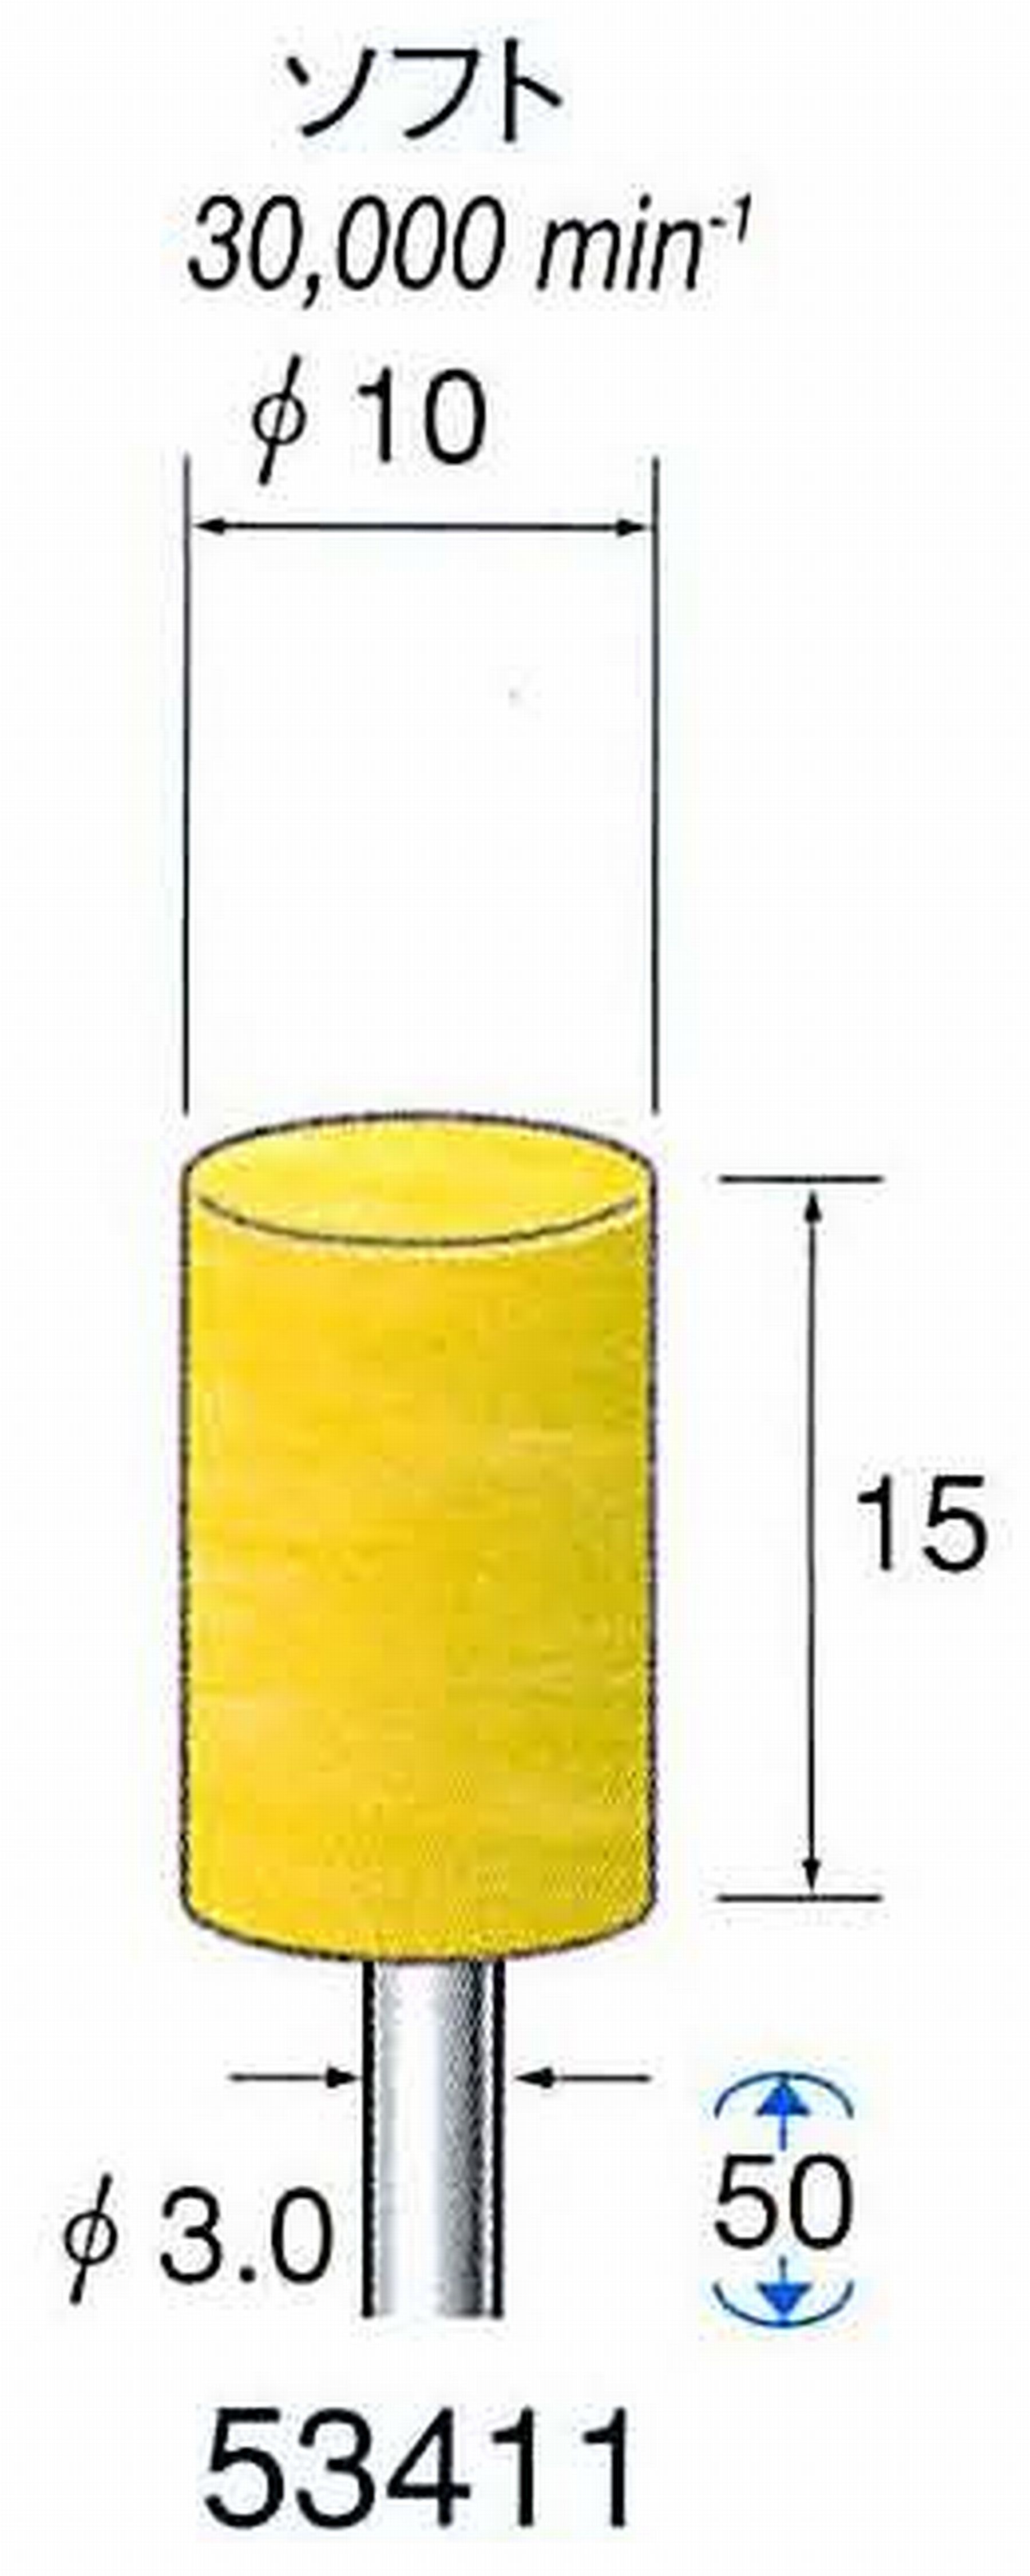 ナカニシ/NAKANISHI イエローフェルトバフ ソフト(研磨材入り) WA(アルミナ)含浸タイプ 軸径(シャンク)φ3.0mm 53411